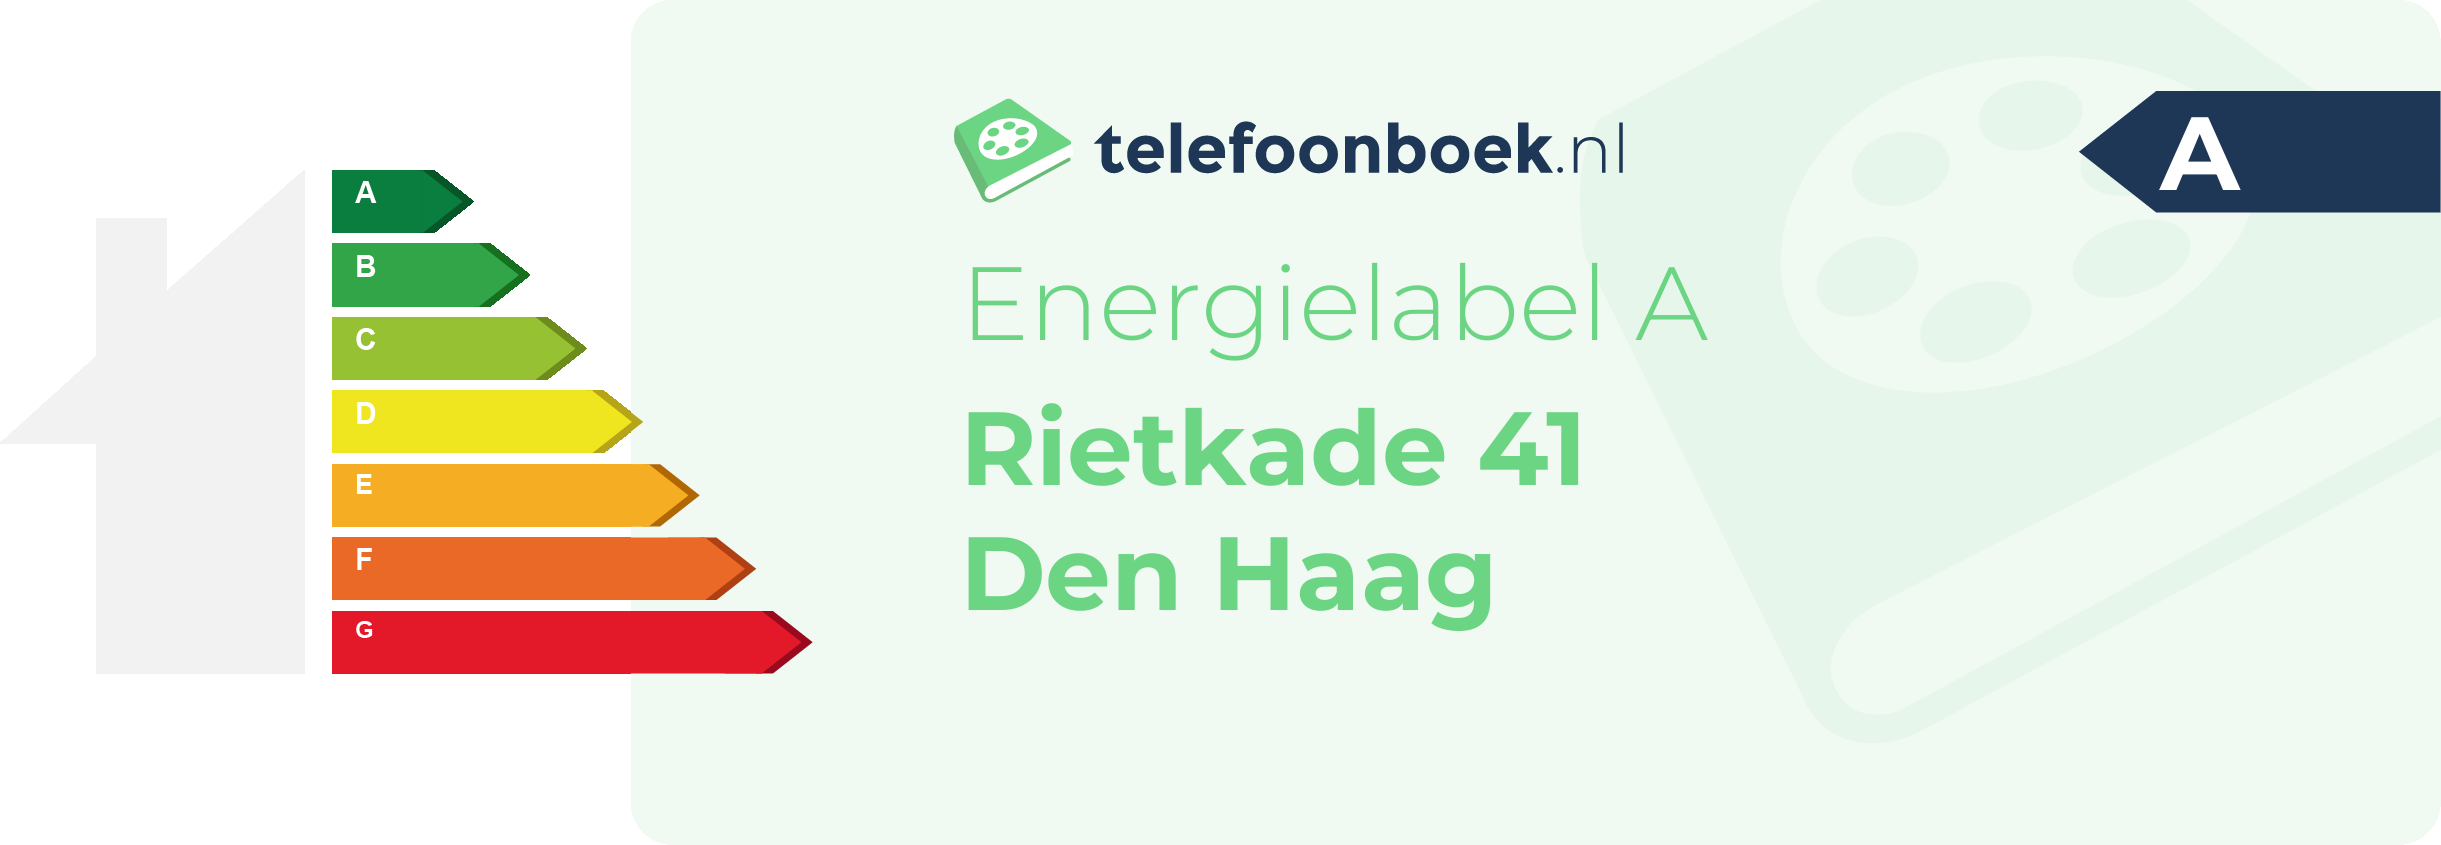 Energielabel Rietkade 41 Den Haag